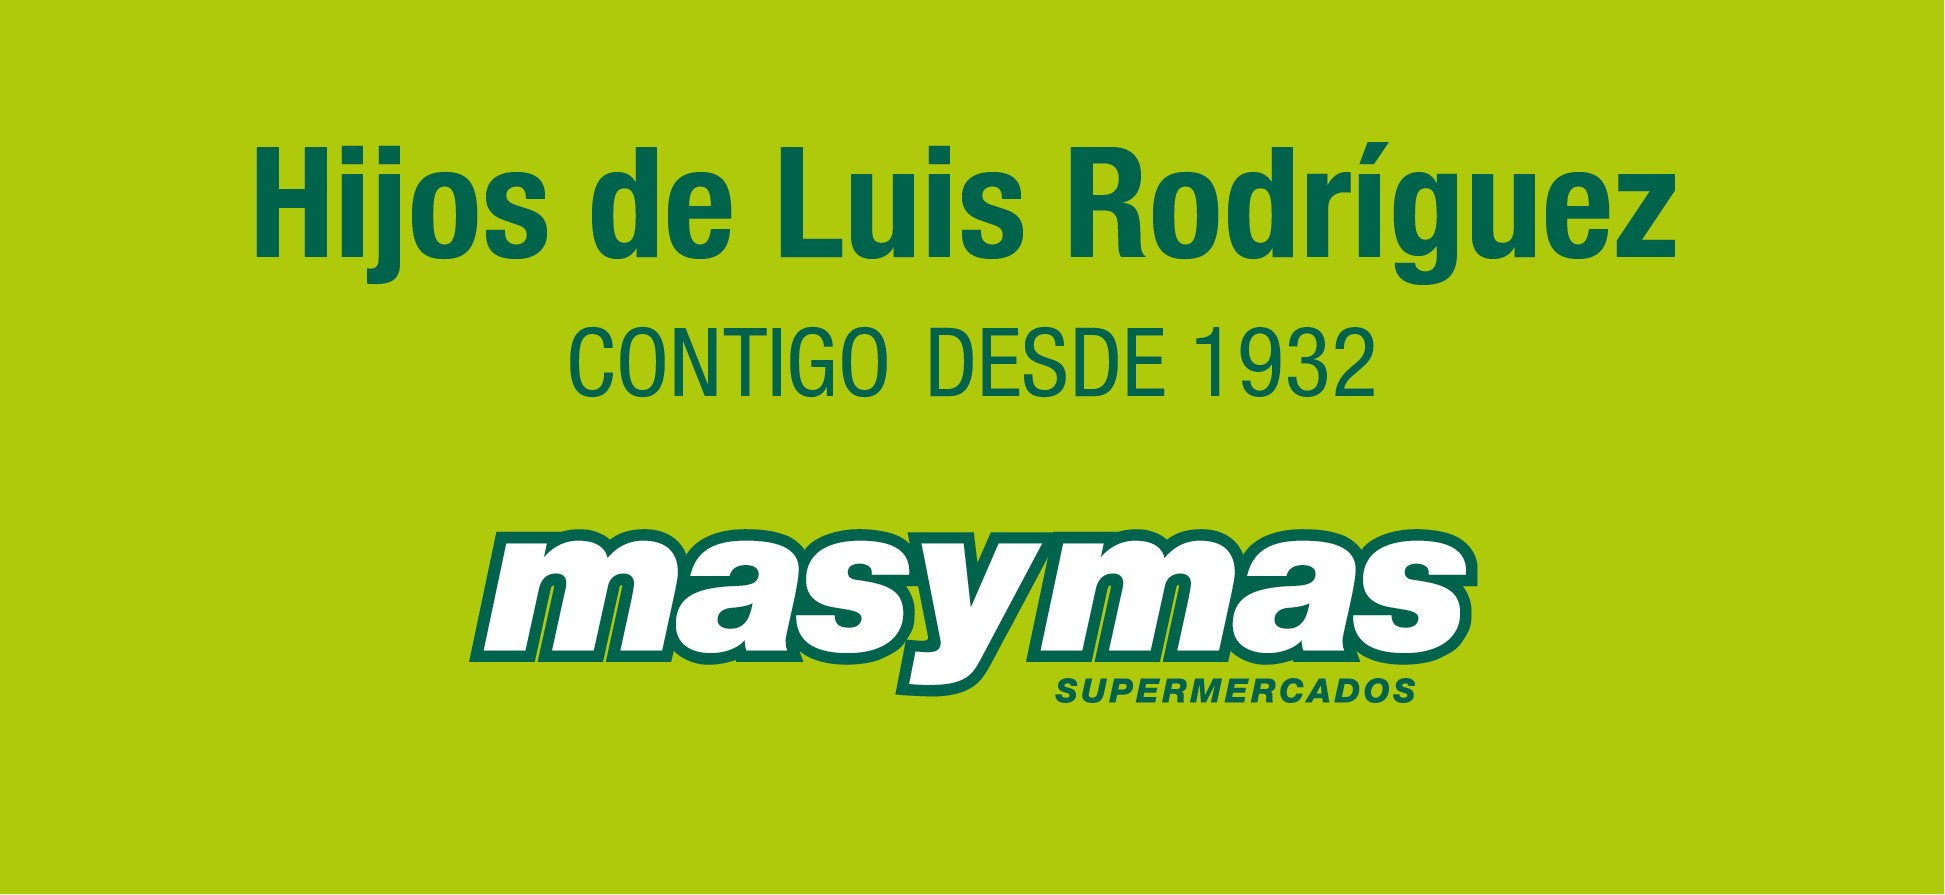 Hijos Luis Rodriguez S.A.